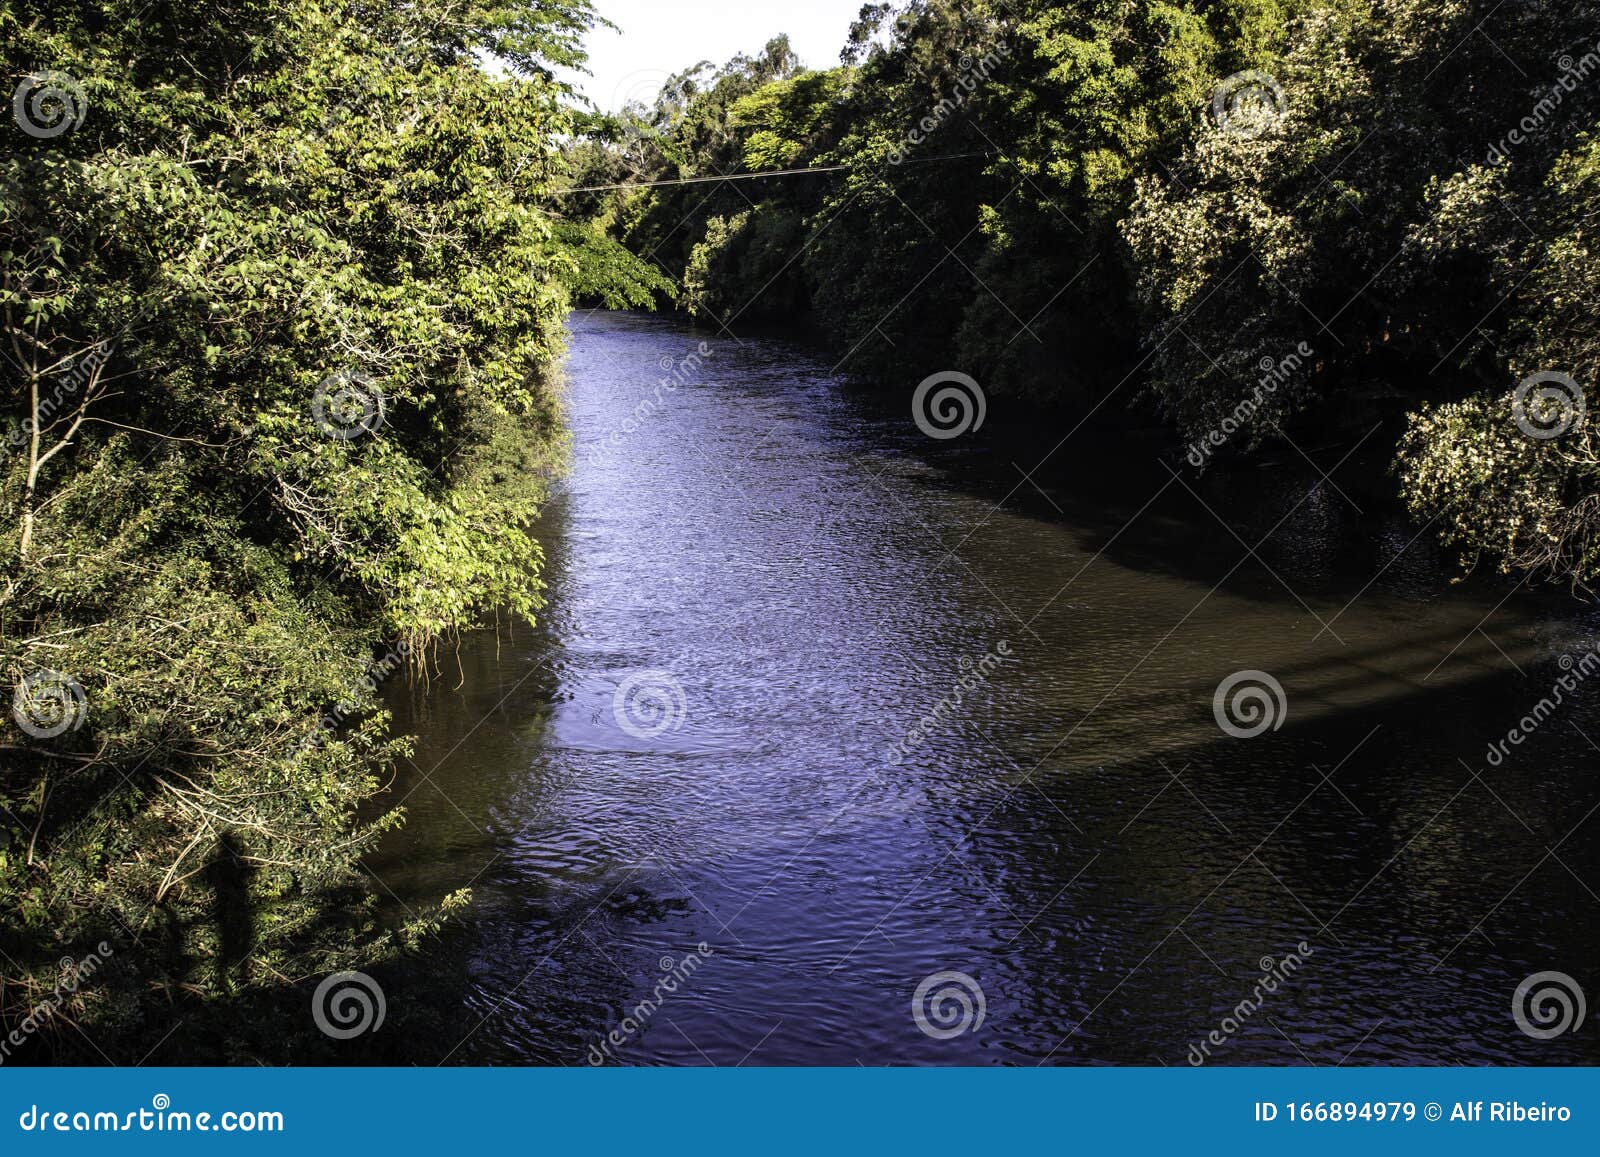 pardo river in aguas de santa bÃÂ¡rbara city